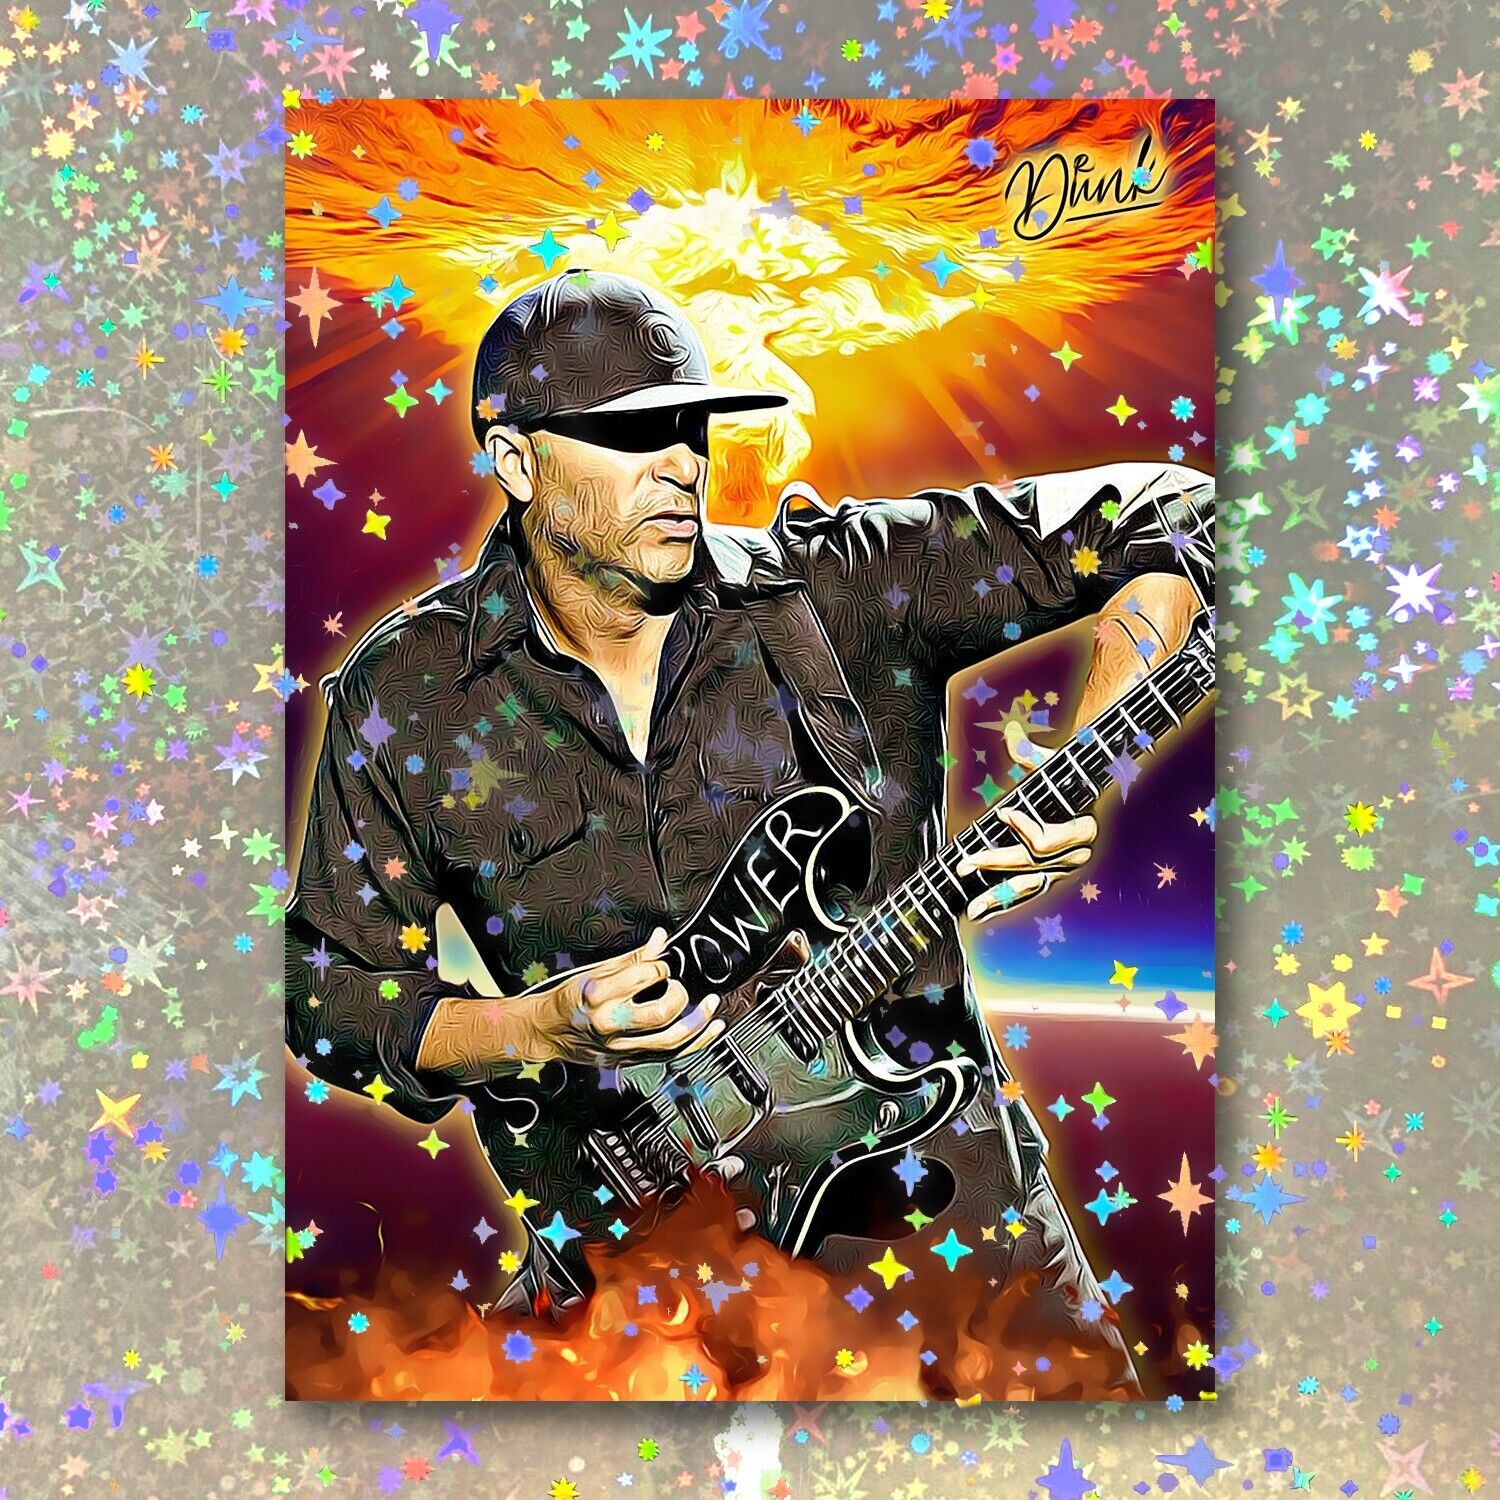 Tom Morello Holographic Guitarmageddon Sketch Card Limited 1/5 Dr. Dunk Signed